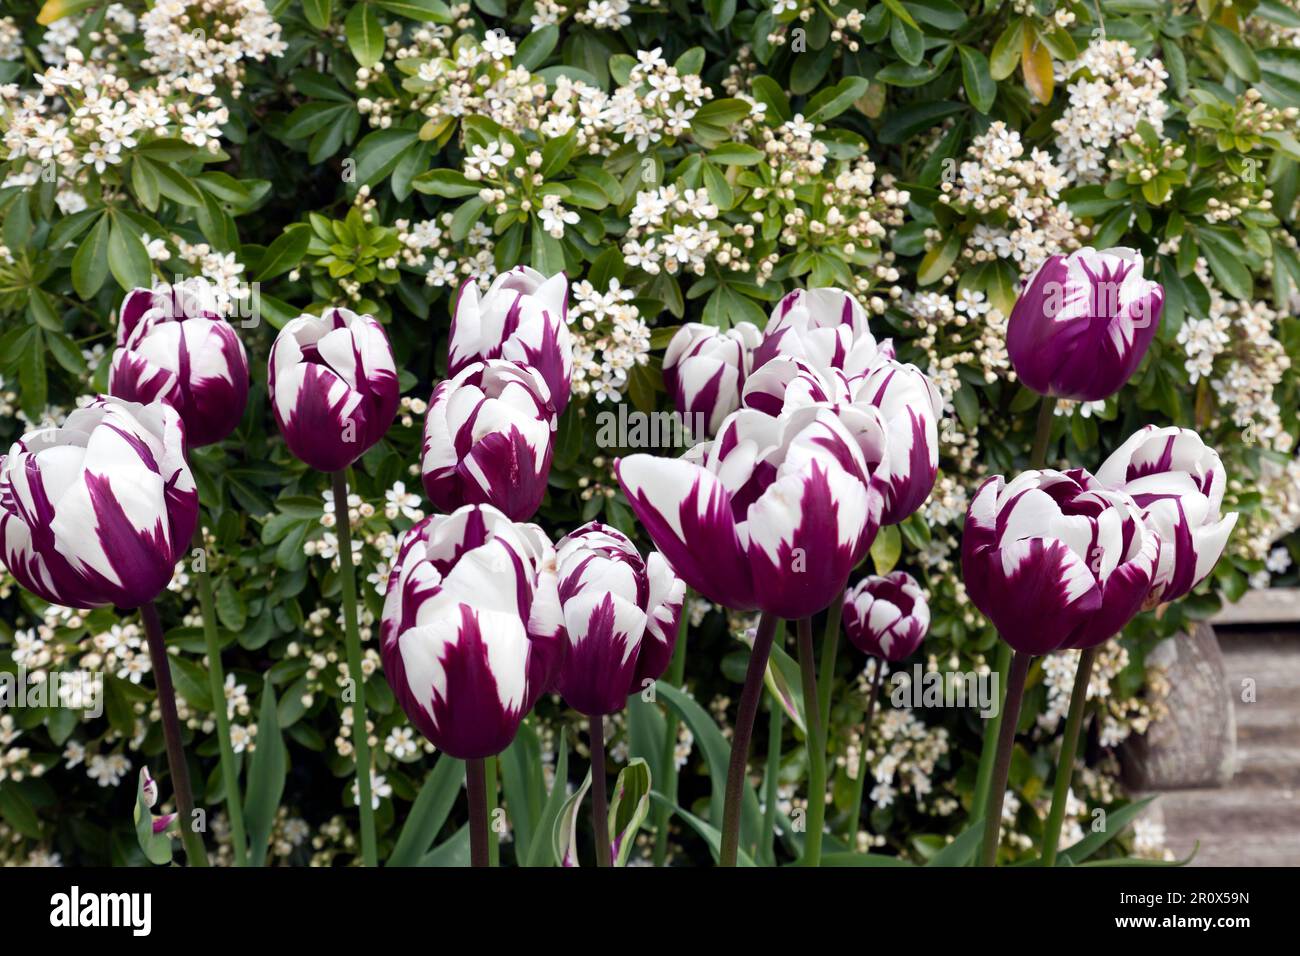 Primo piano di alcuni tulipani variegati, rossi e bianchi nella regina Elisabetta, il giardino della regina madre al castello di Walmer, Kent Foto Stock